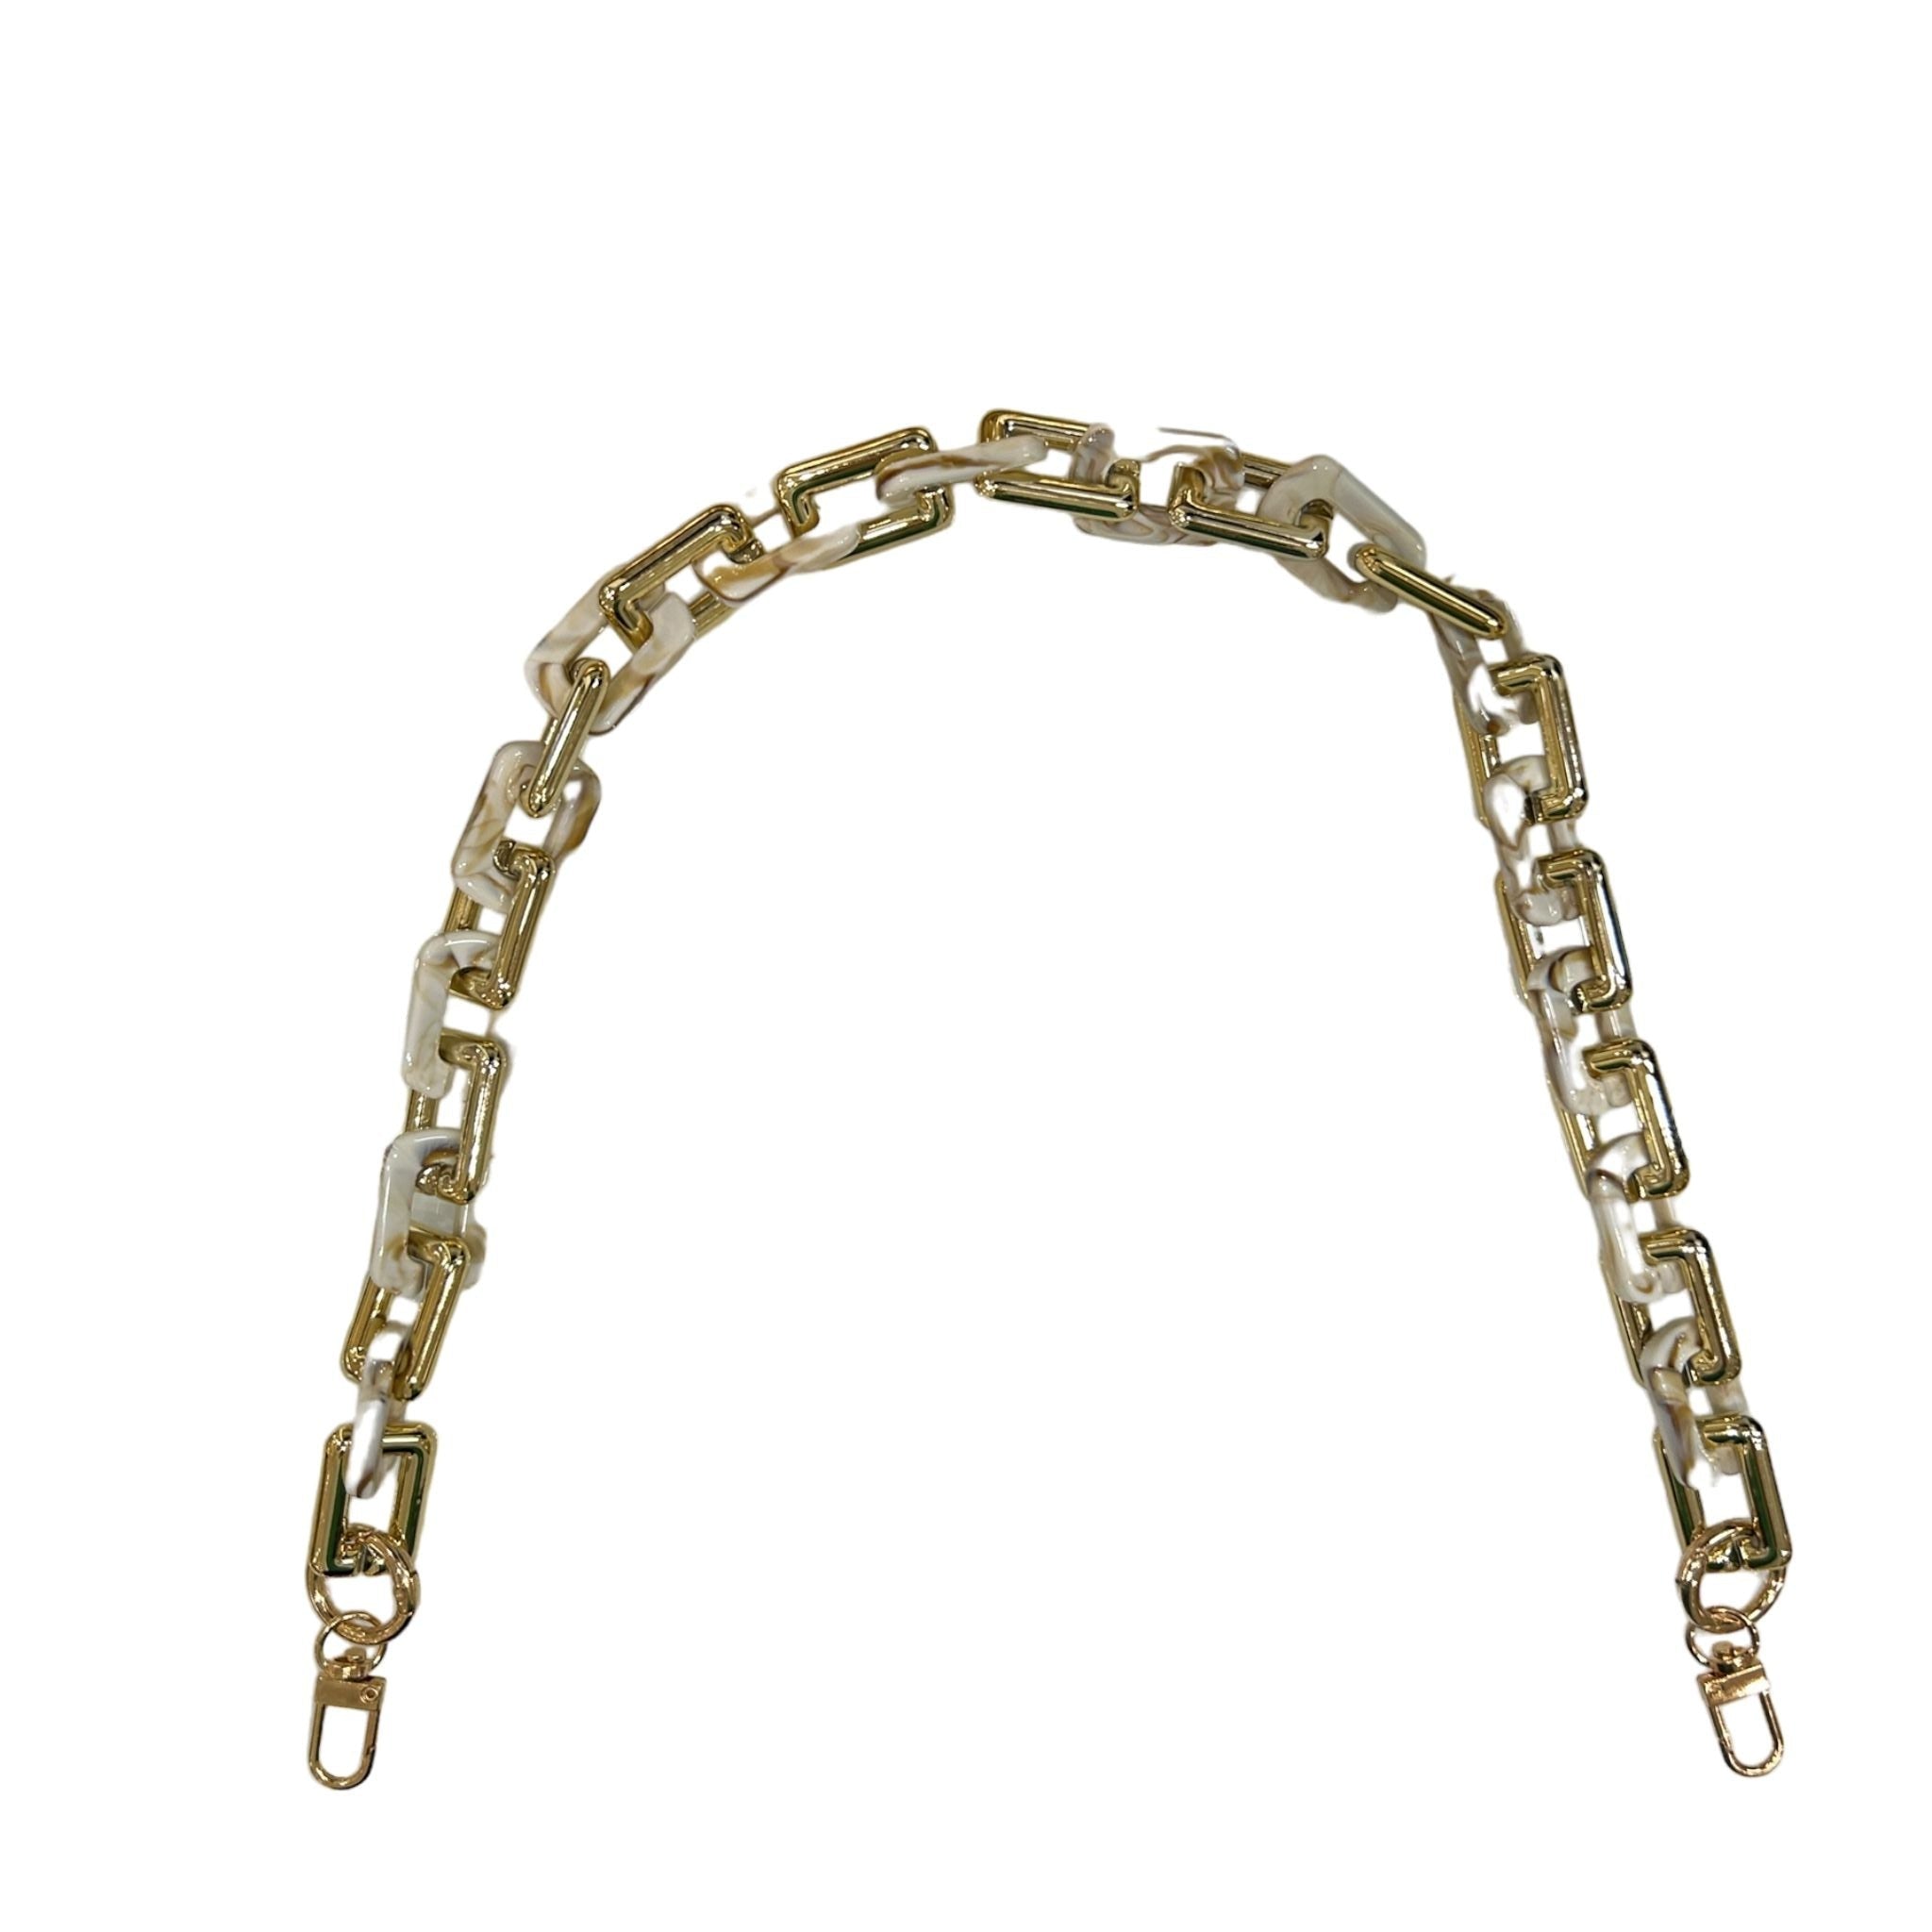 Chain 60cm